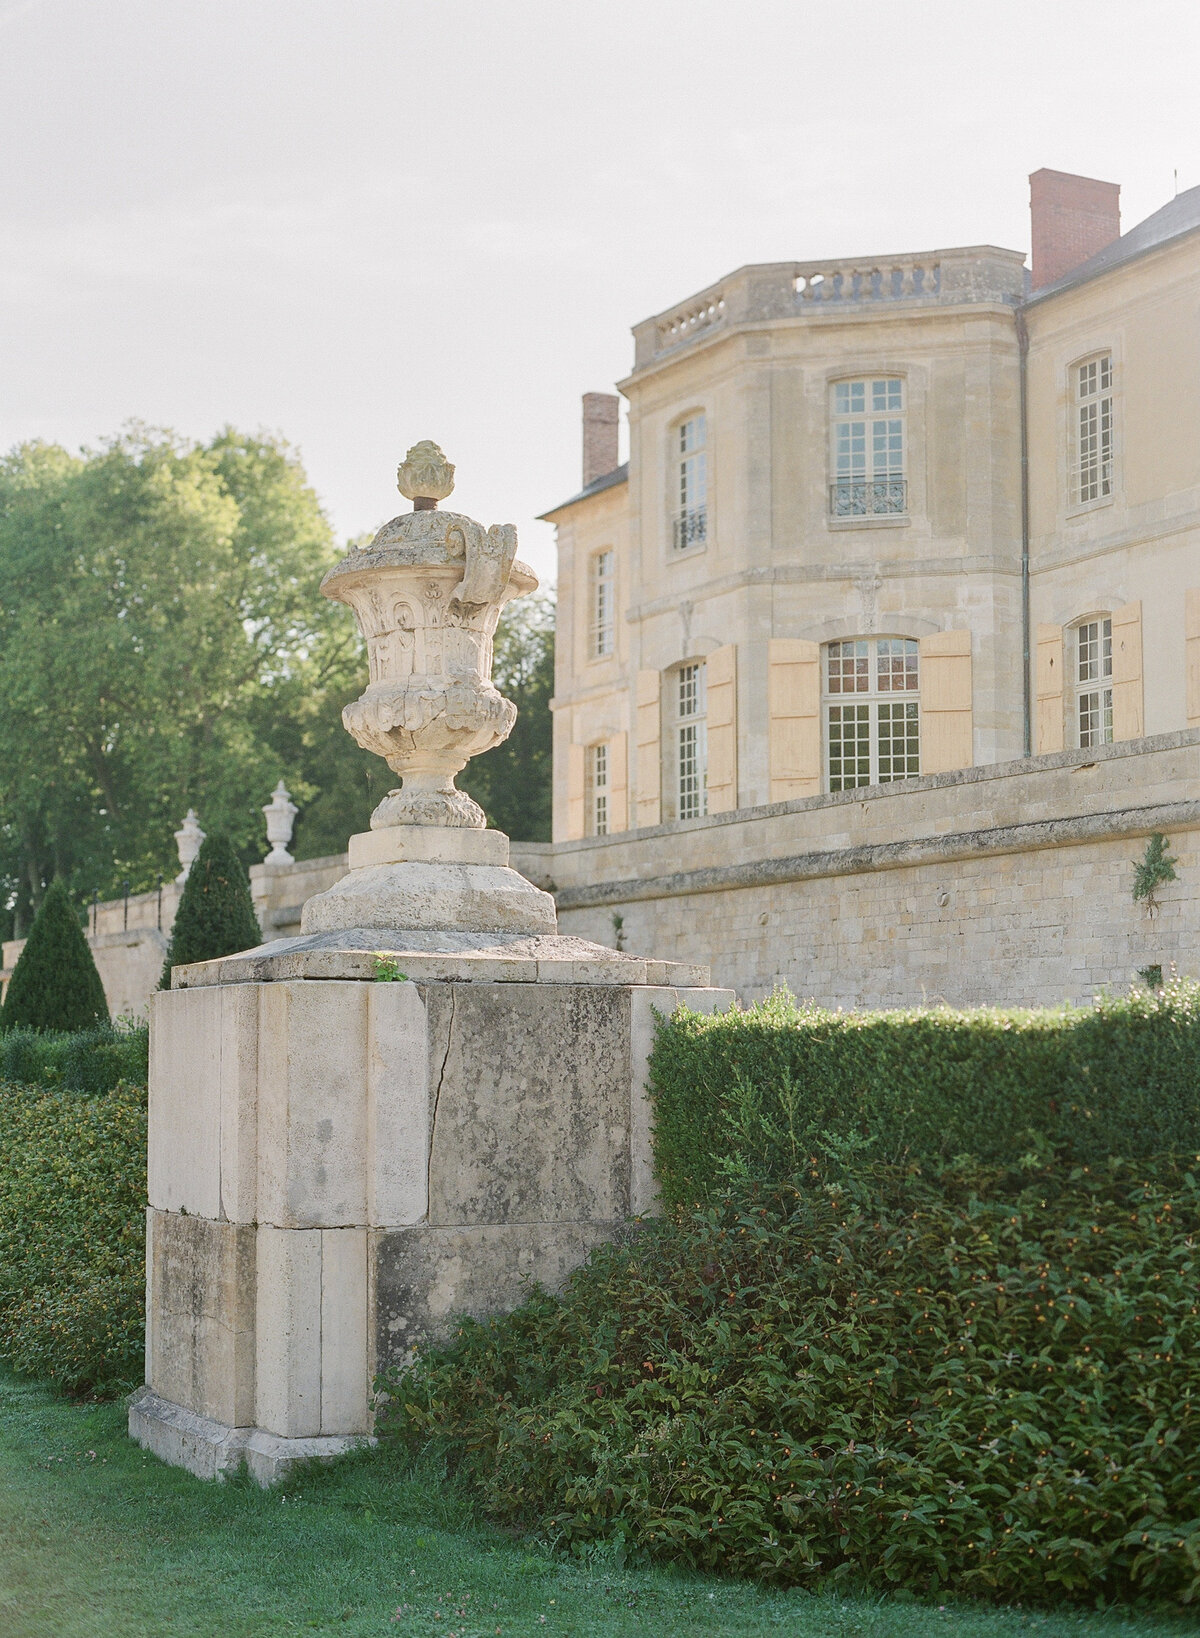 Château de Villette is a wedding venue only a short drive from Paris.